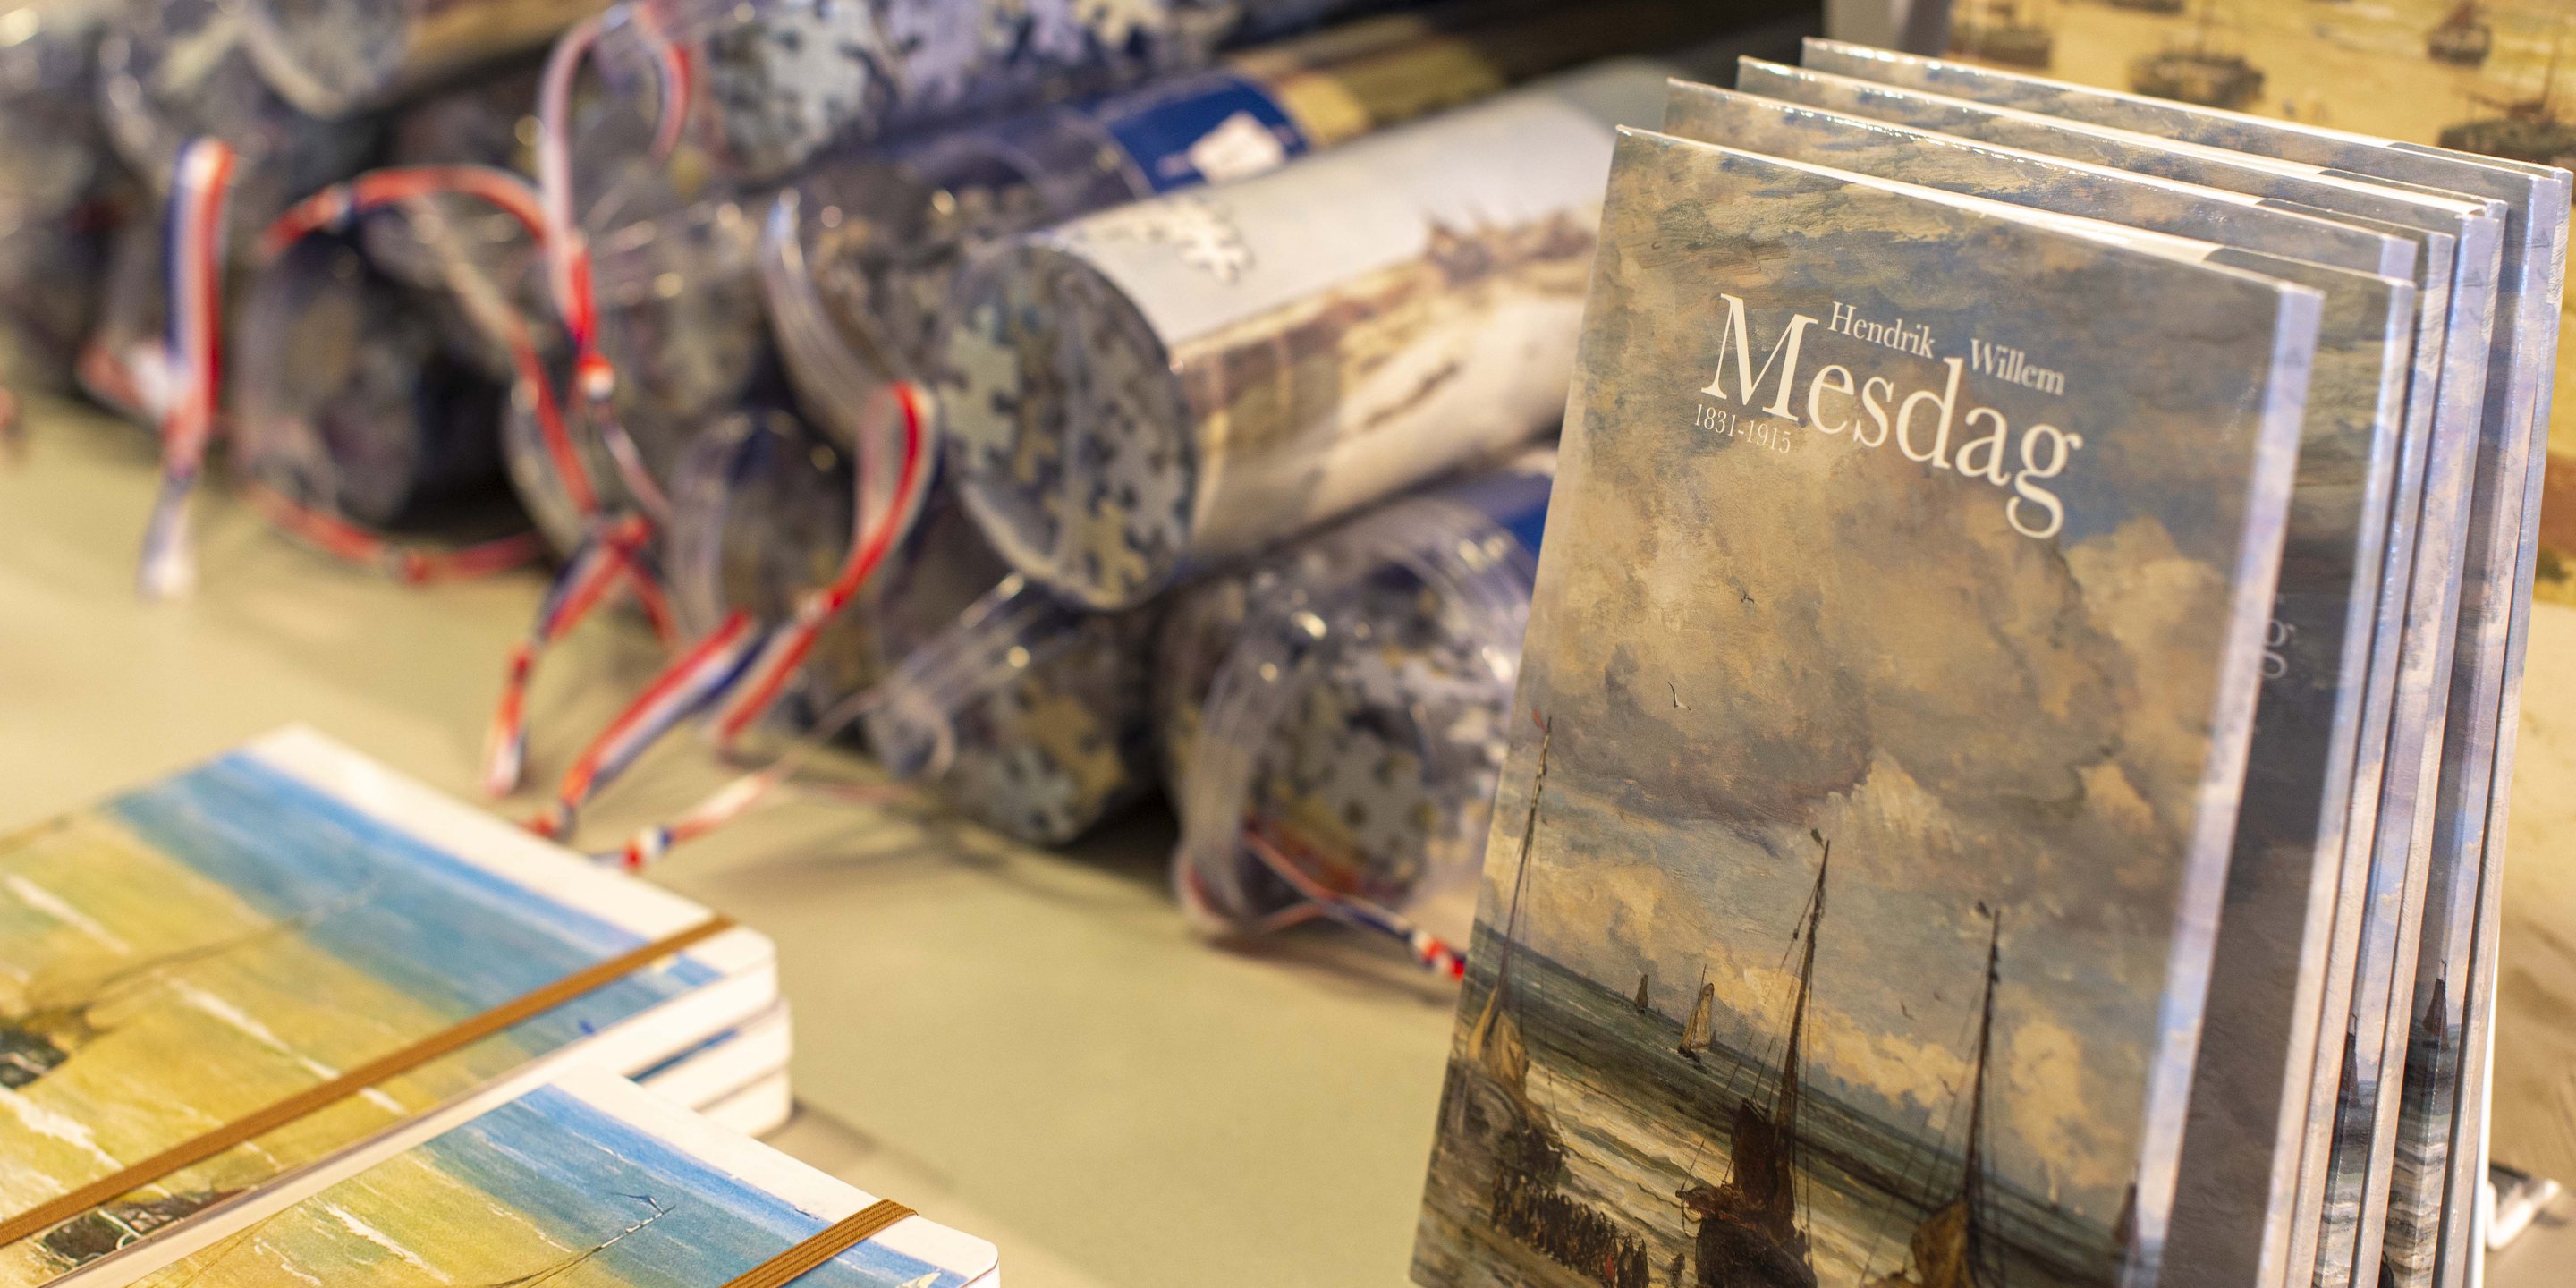 Puzzels, boekjes en een mapje met kaarten in de museunwinkel